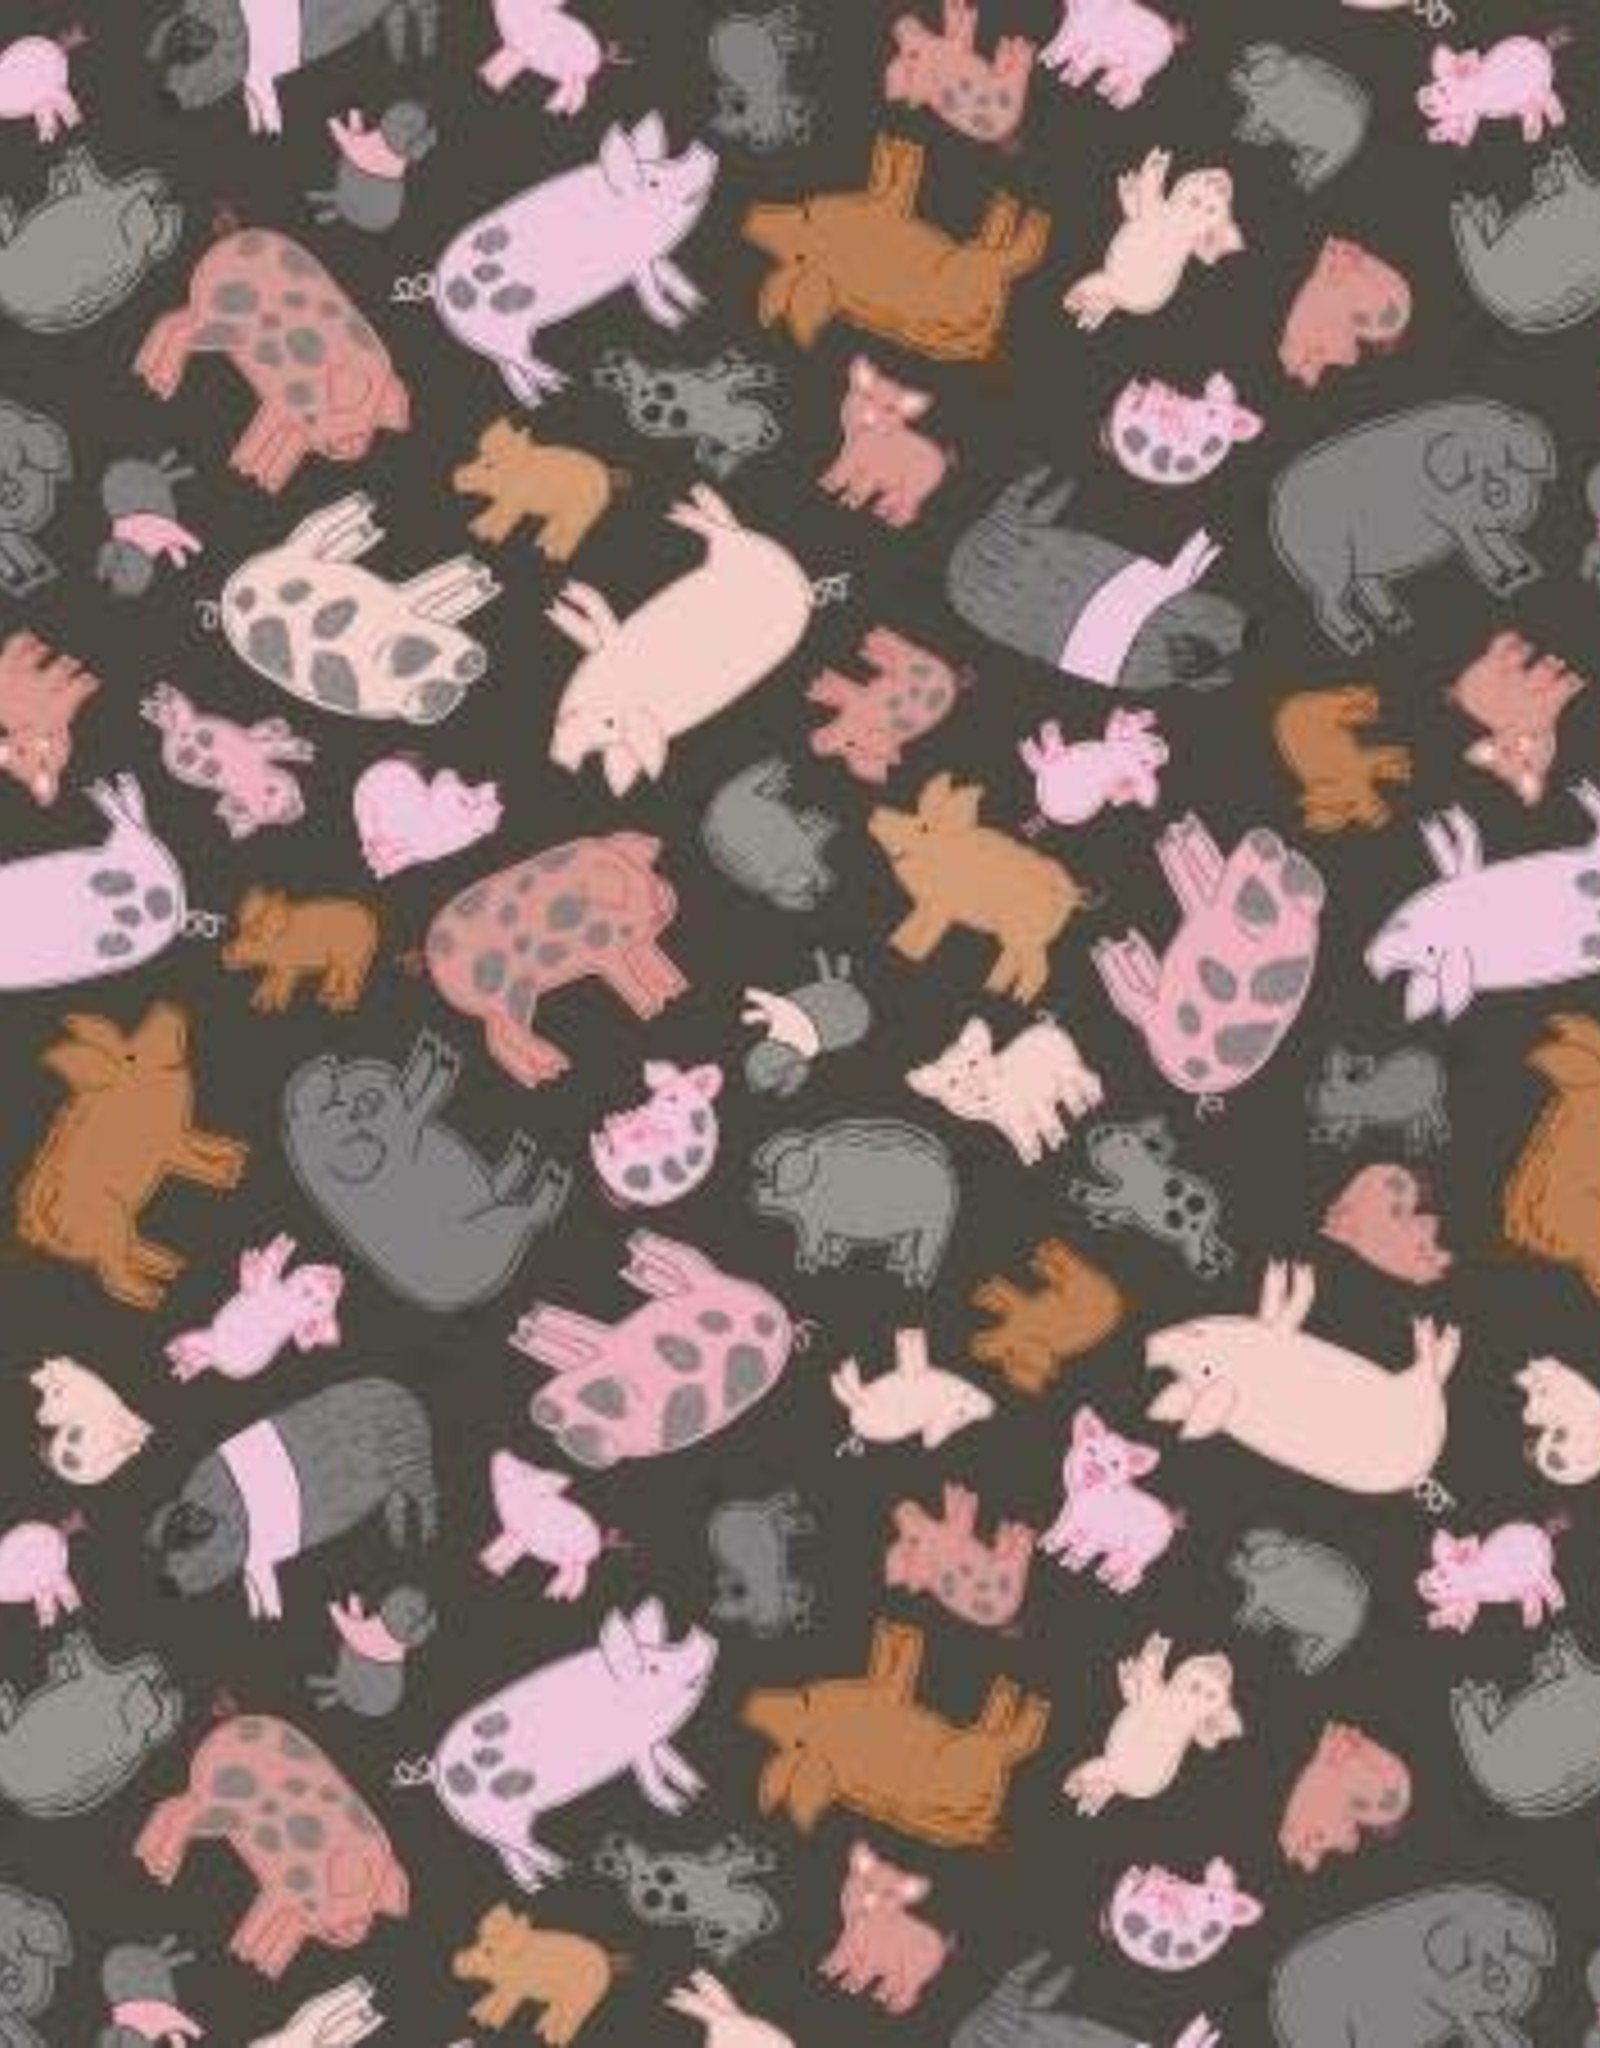 Piggy Tales (1/2m) A534-3